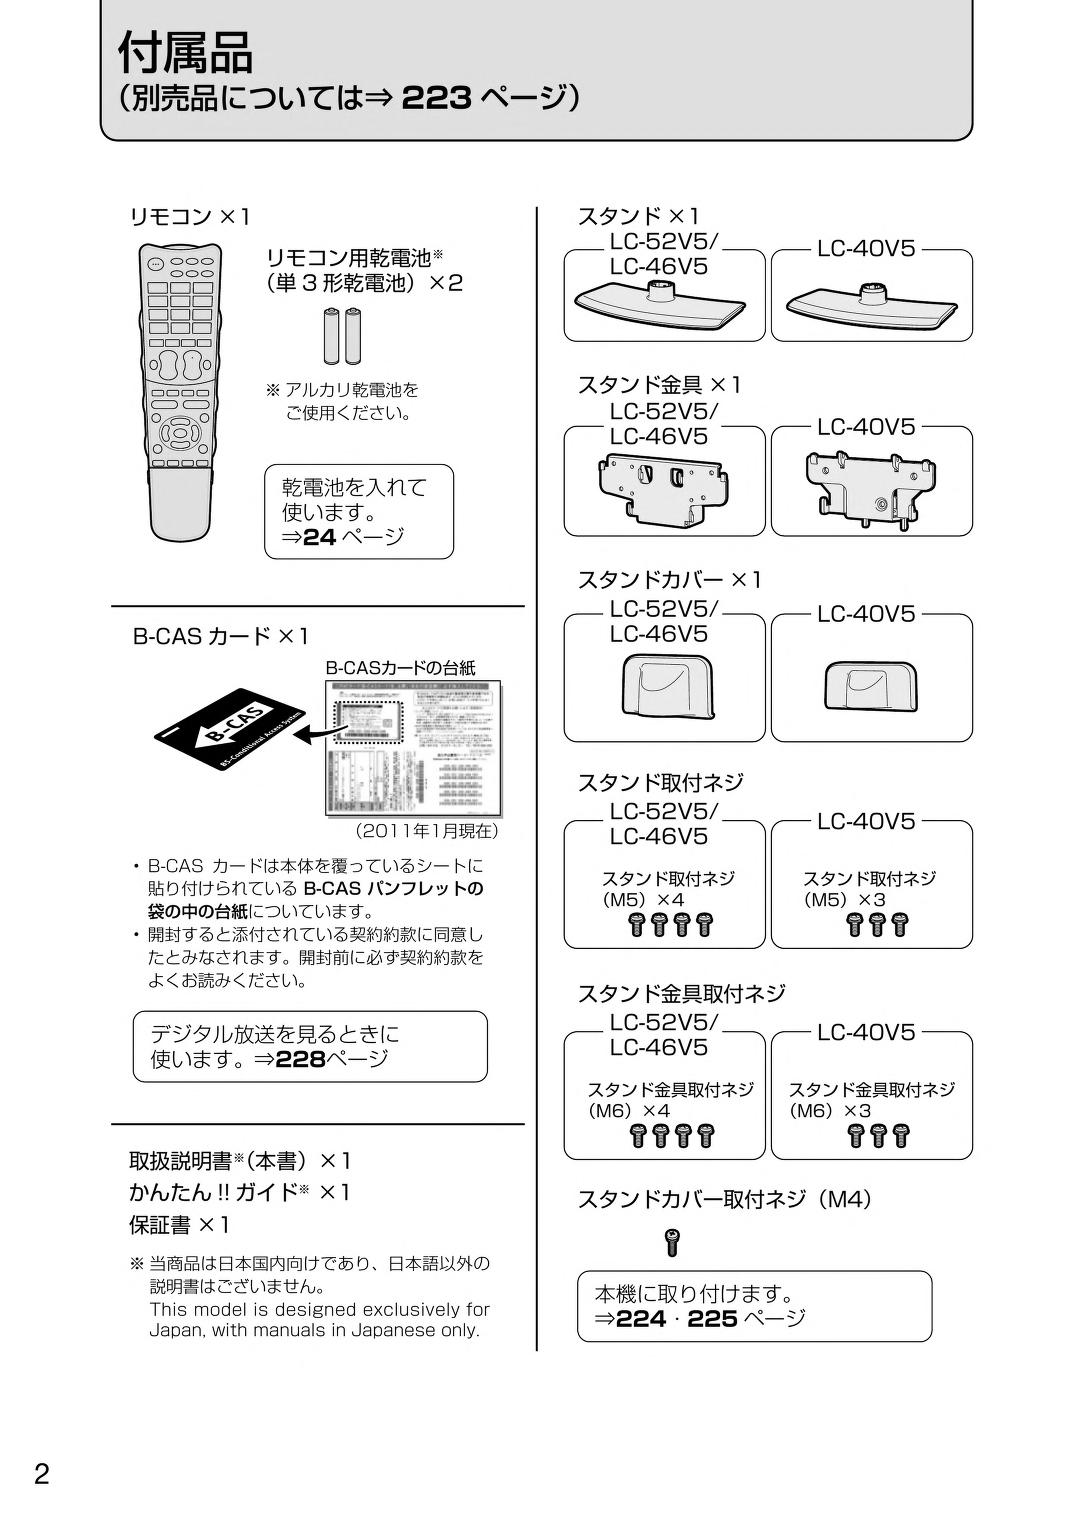 japanese manual 68055 : LC-40V5 の取扱説明書・マニュアル : Free 